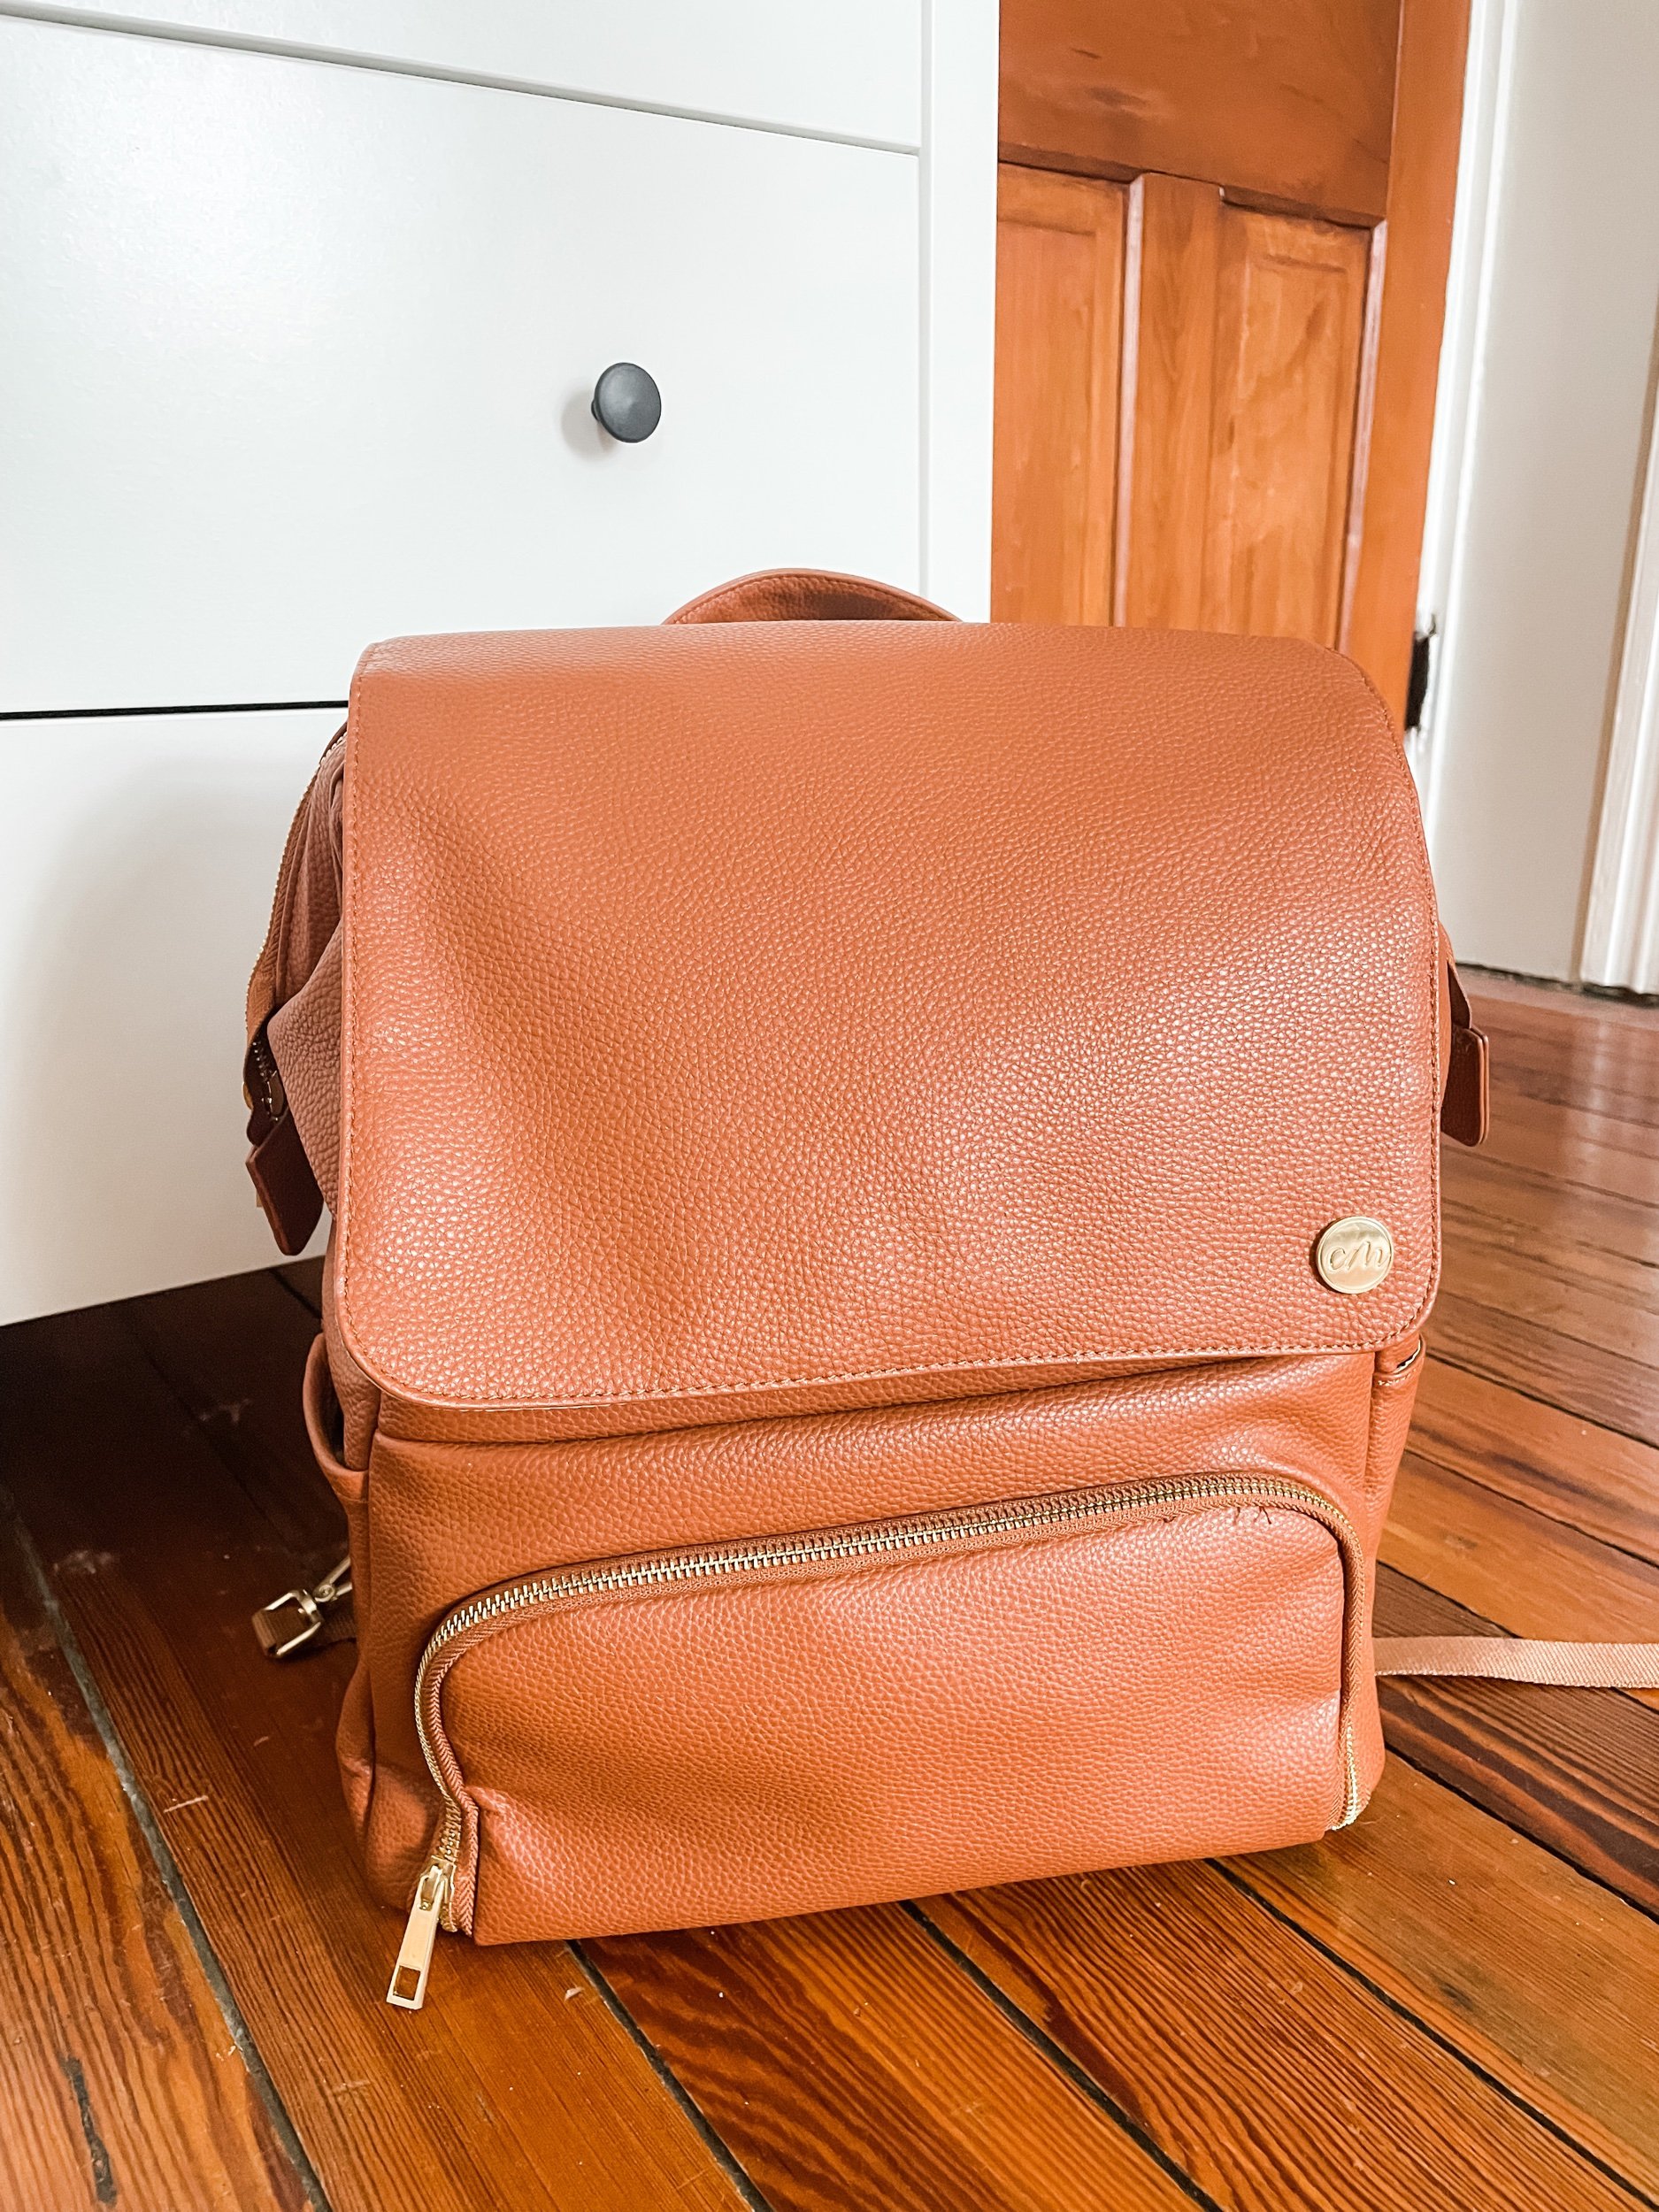 Cute Leather Backpack Diaper Bag